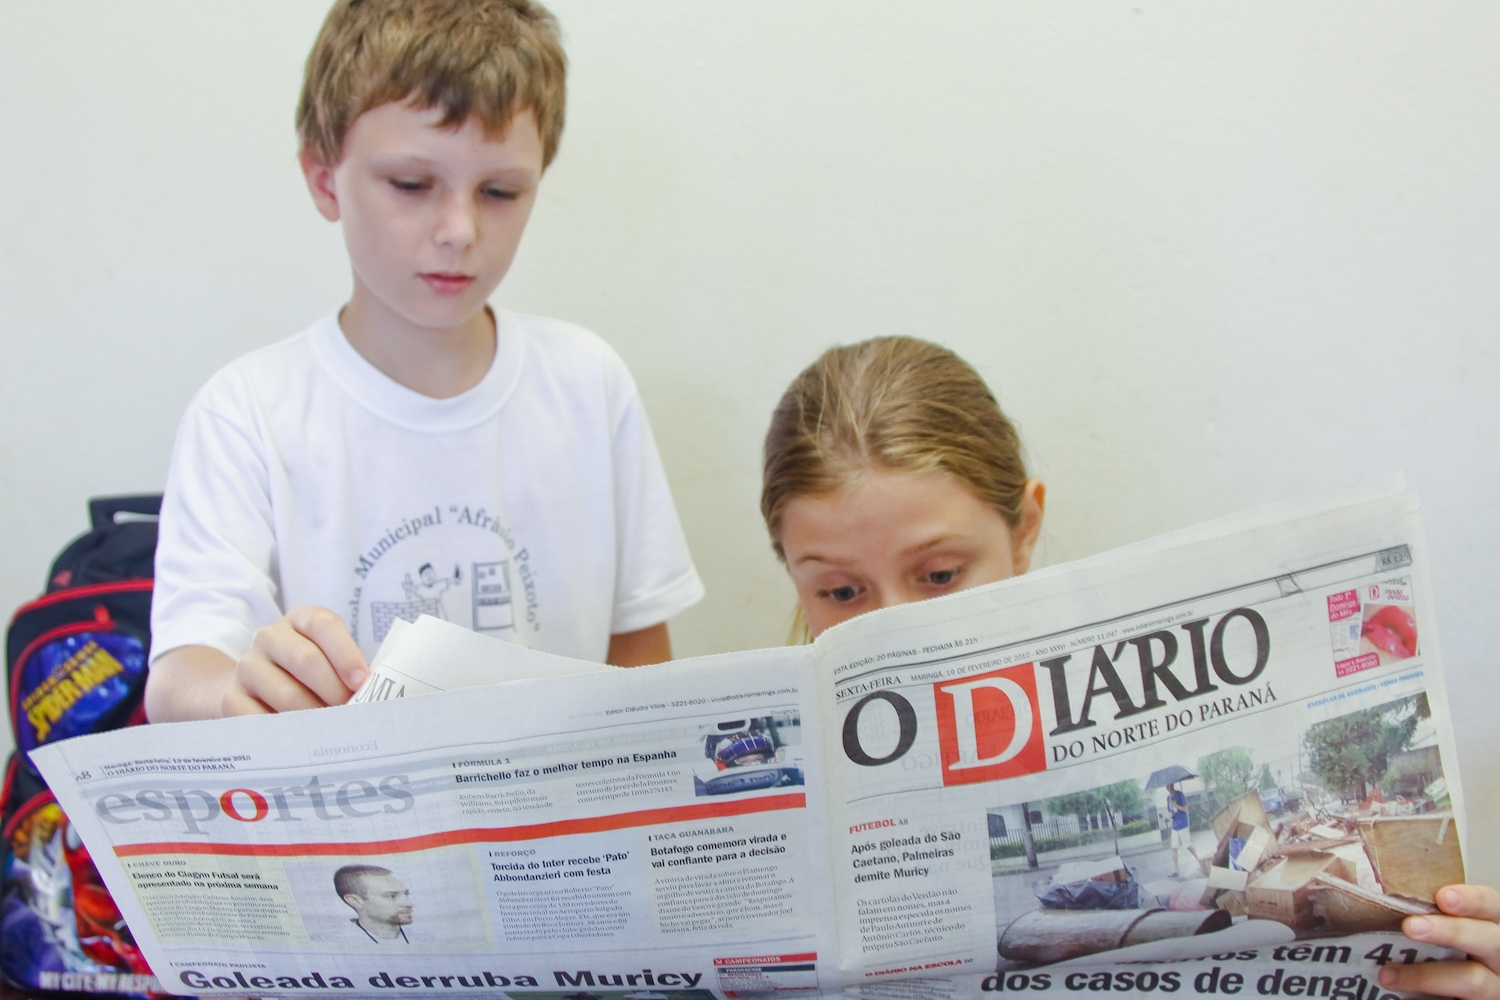  Leitura de jornais em sala de aula pode ser obrigatória no Paraná